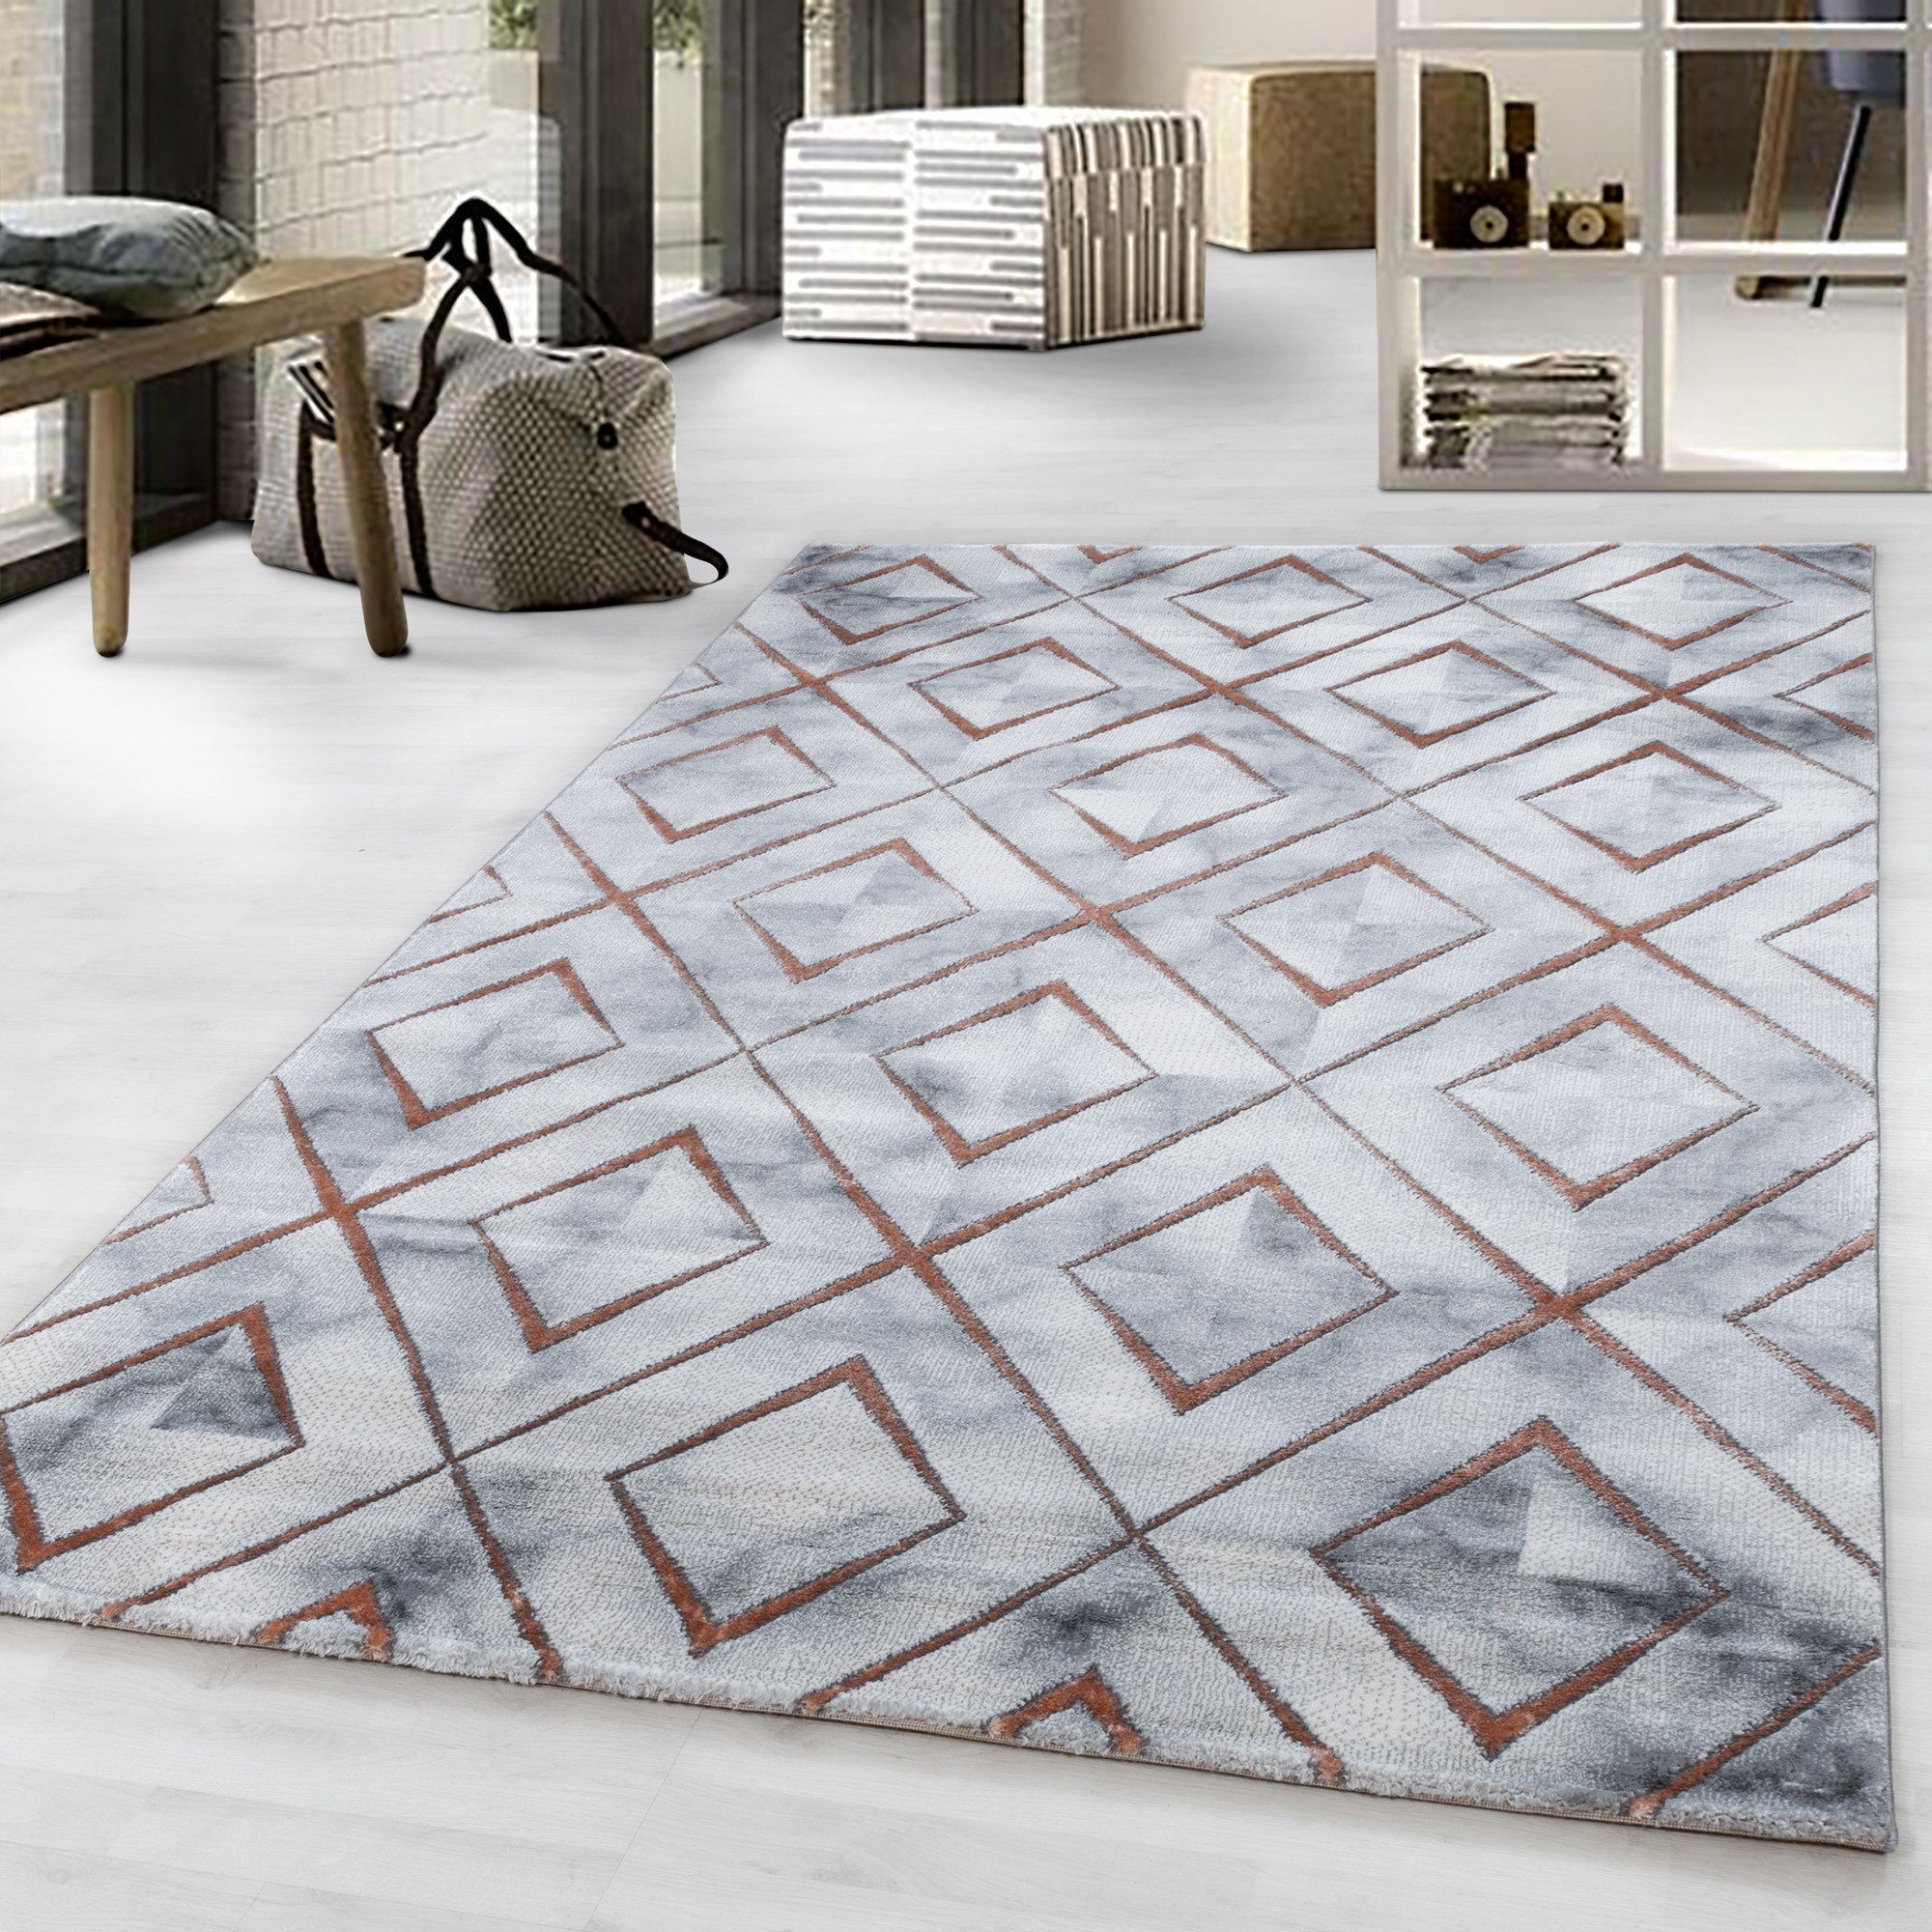 Designteppich Marmoroptik Flachflorteppich Kurzflorteppich Wohnzimmer Muster, Miovani Bronze | Kinderteppiche